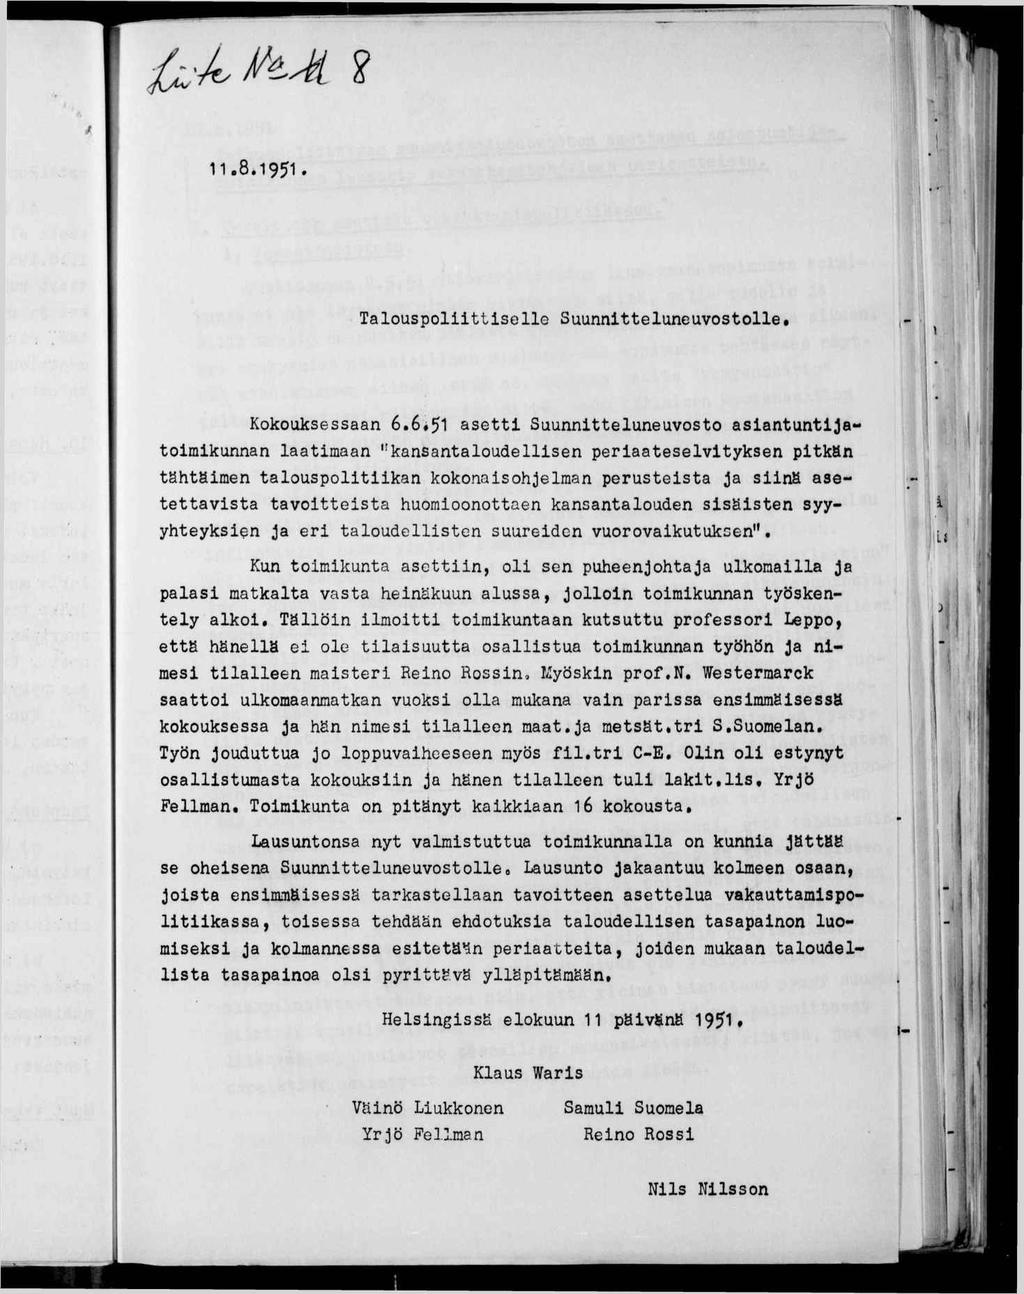 11.8.1951. 1» f \ í Talouspolttselle Suunntteluneuvostolle. Kokouksessaan 6.